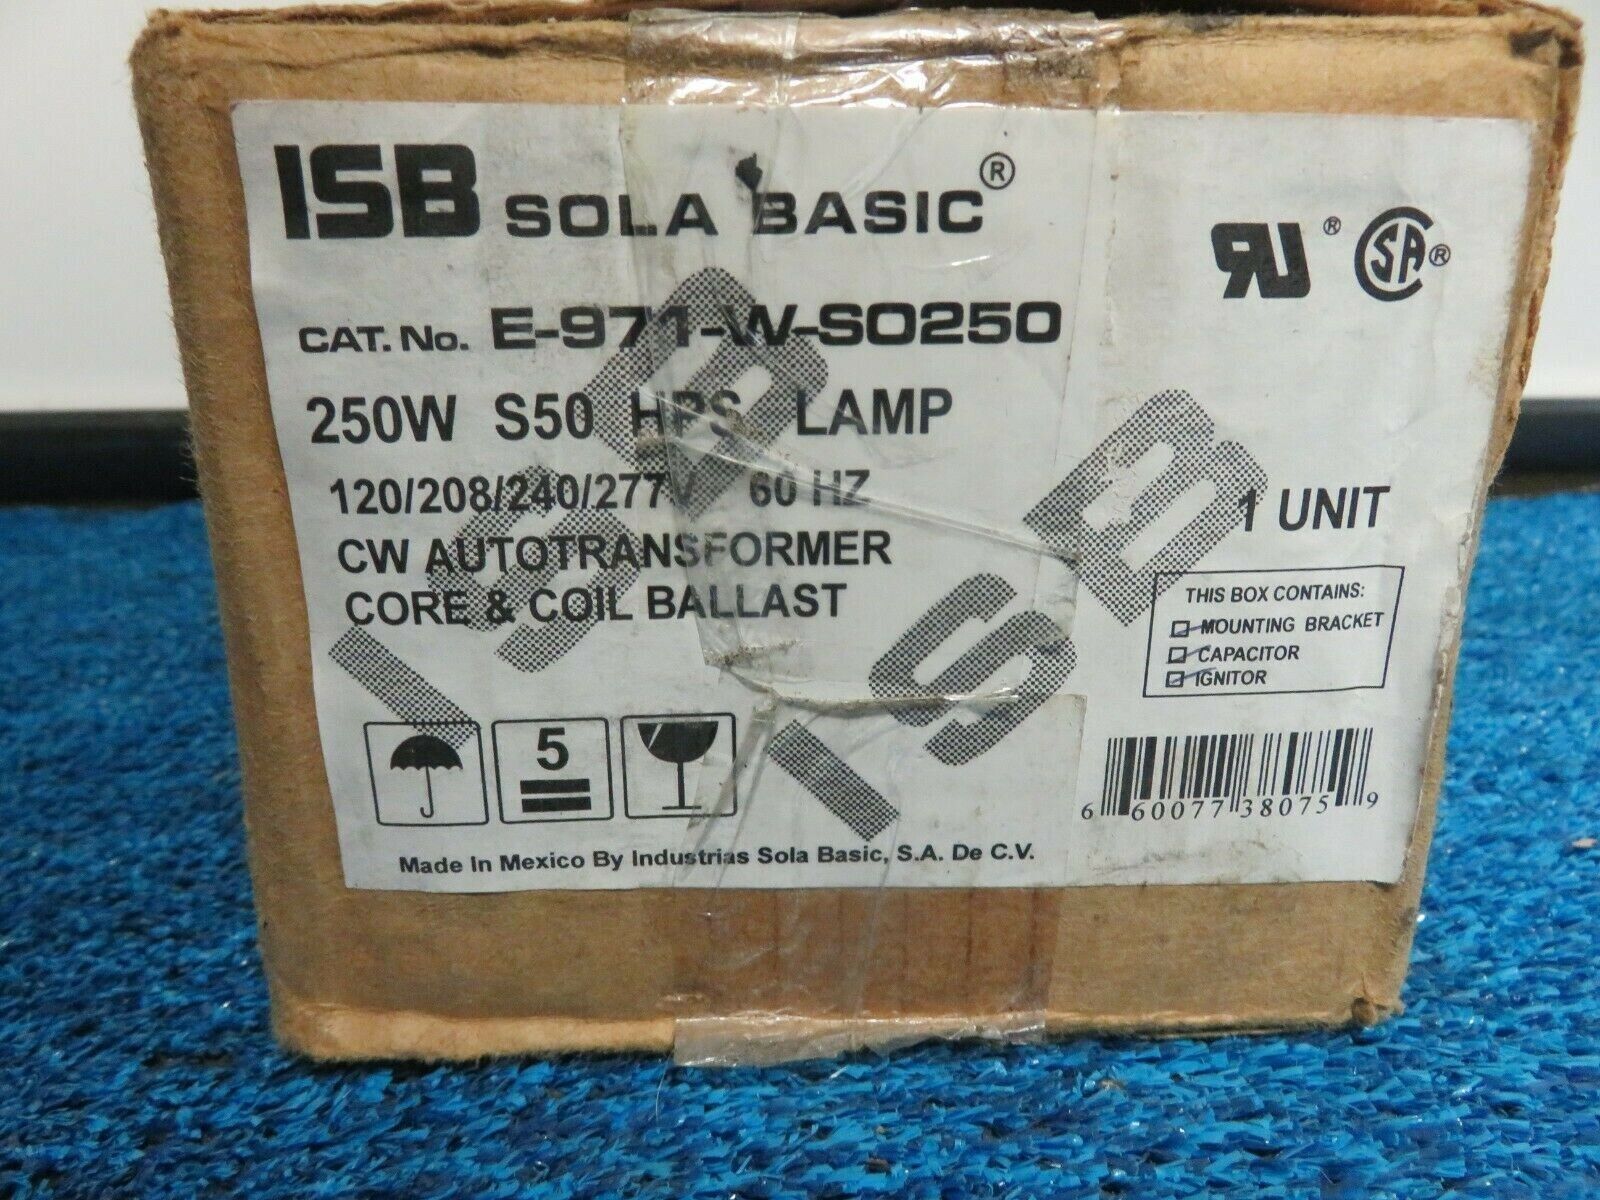 SOLA BASIC E-971-W-SO250, HIGH PRESSURE BALLASTS, 250 W, 120/208/240/277 V